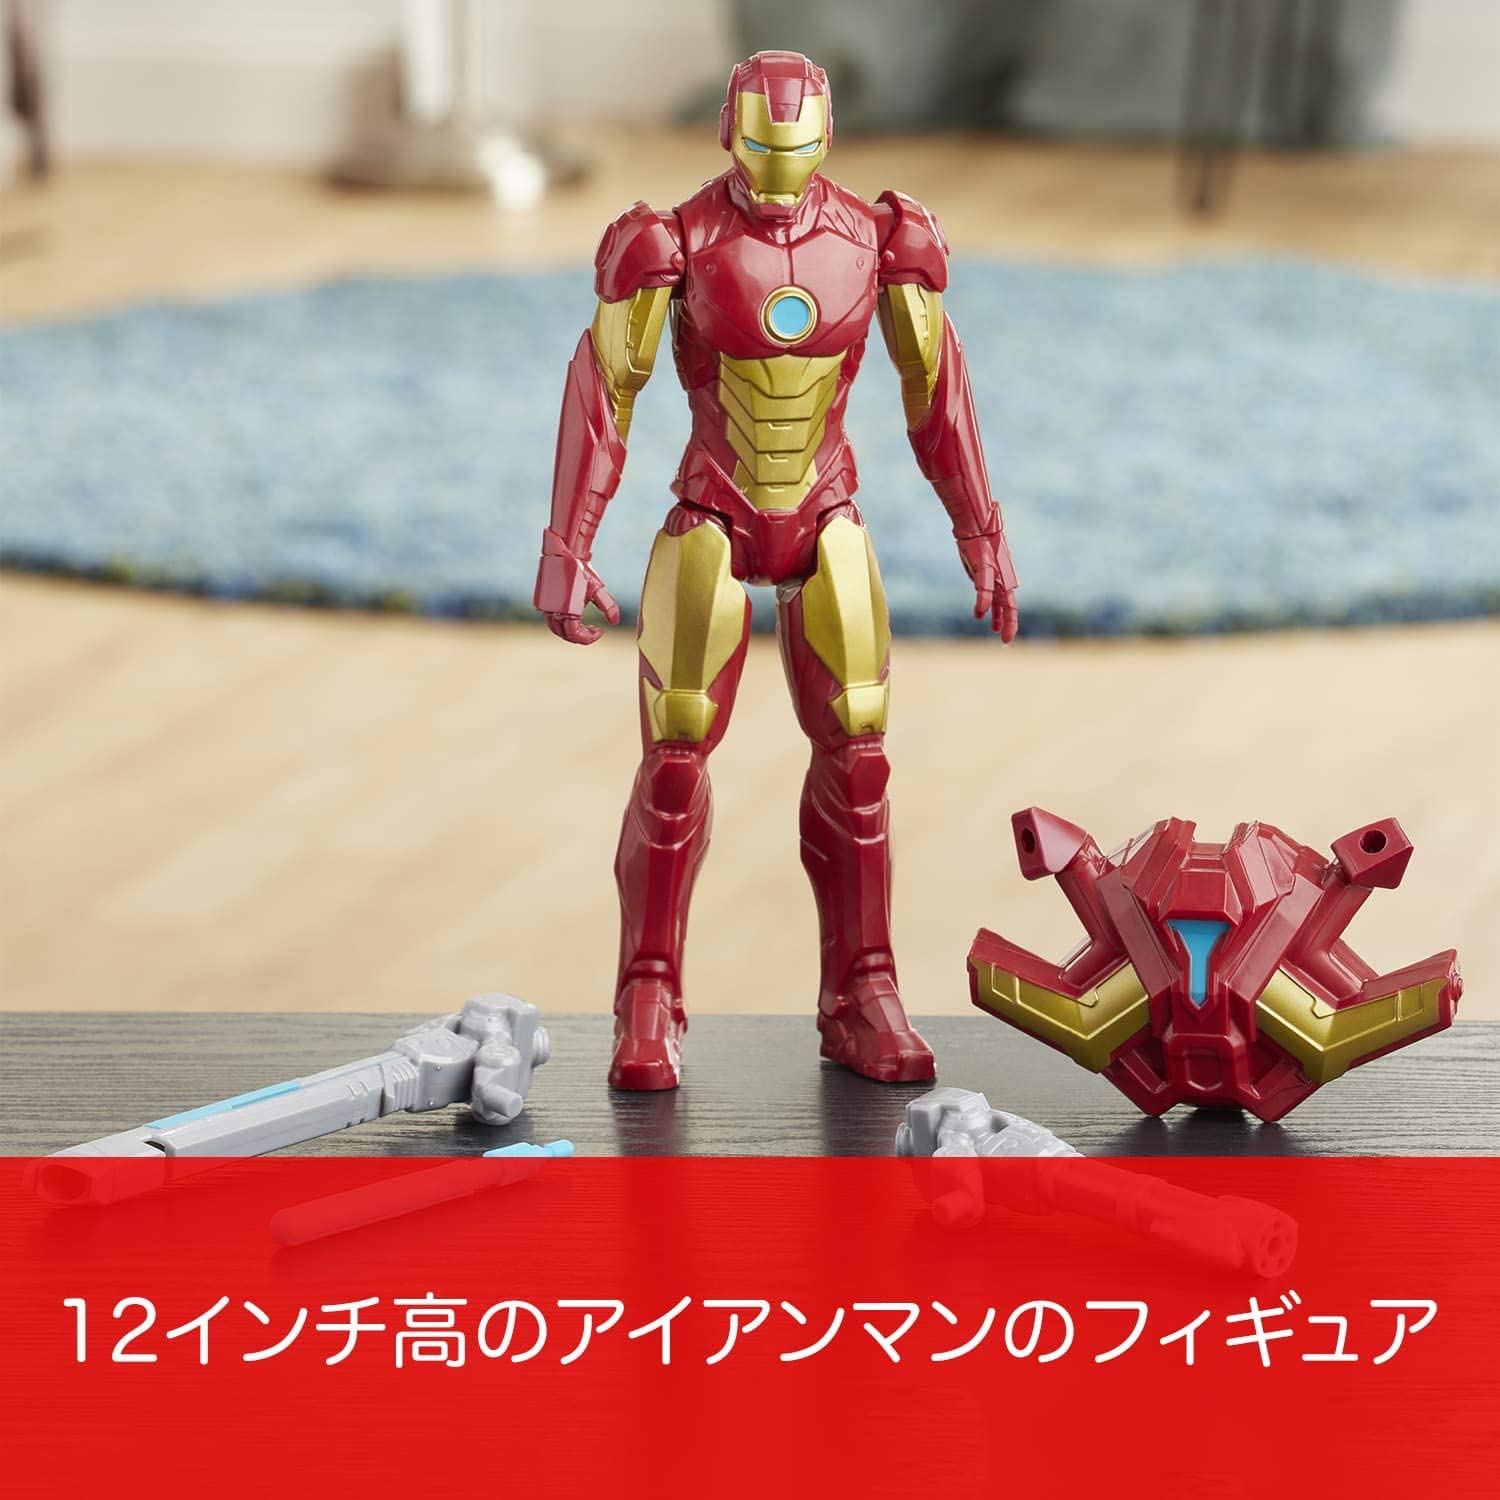 Avengers Marvel Titan Hero Series Blast Gear Iron Man Action Figure